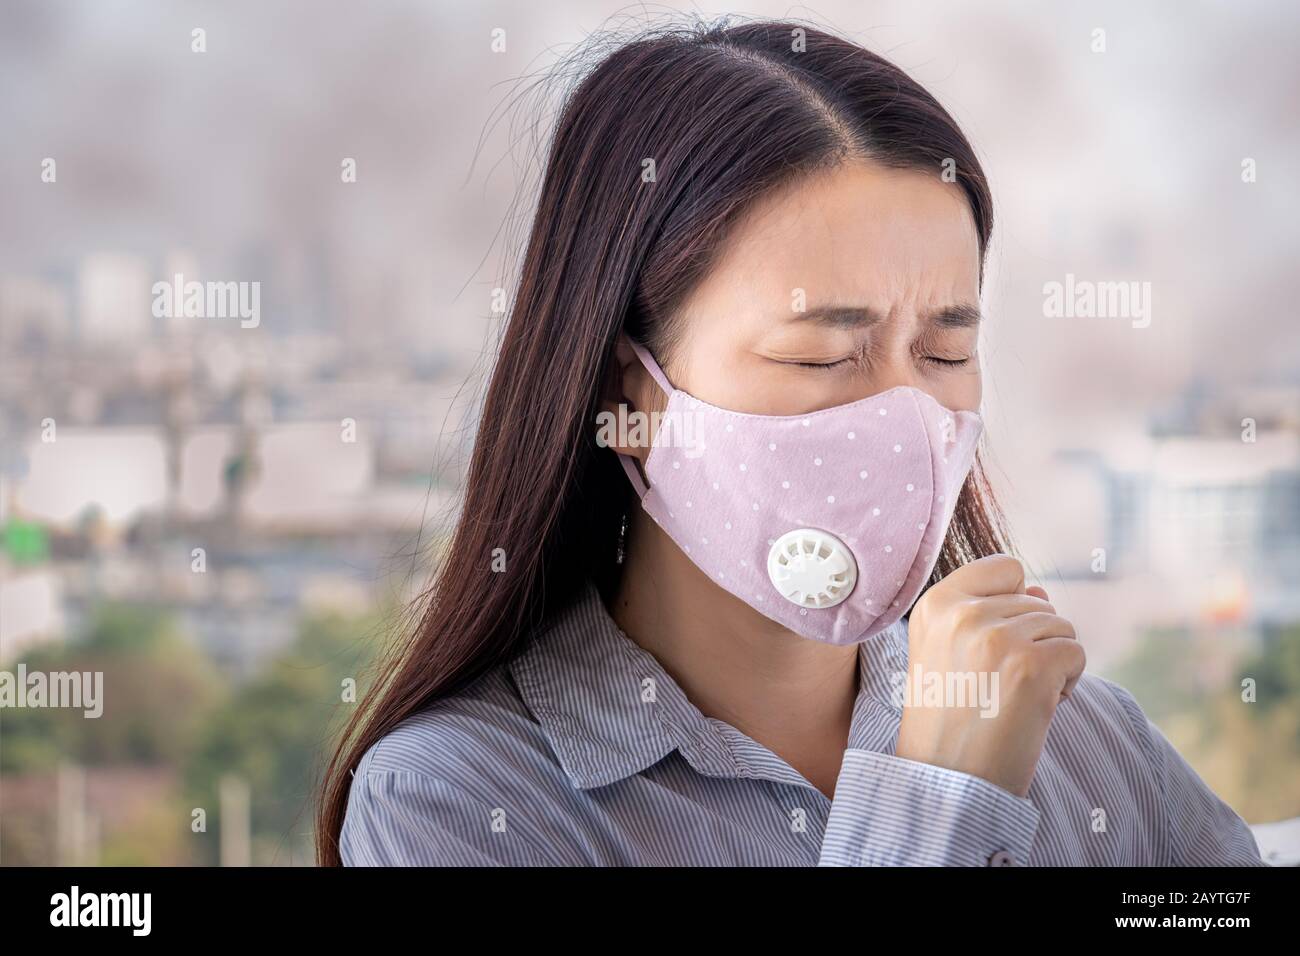 PM2.5. La gente che si sente ammalata dall'inquinamento atmosferico, l'ambiente ha effetti nocivi o velenosi. Donna in città che indossa maschera facciale per proteggersi Foto Stock